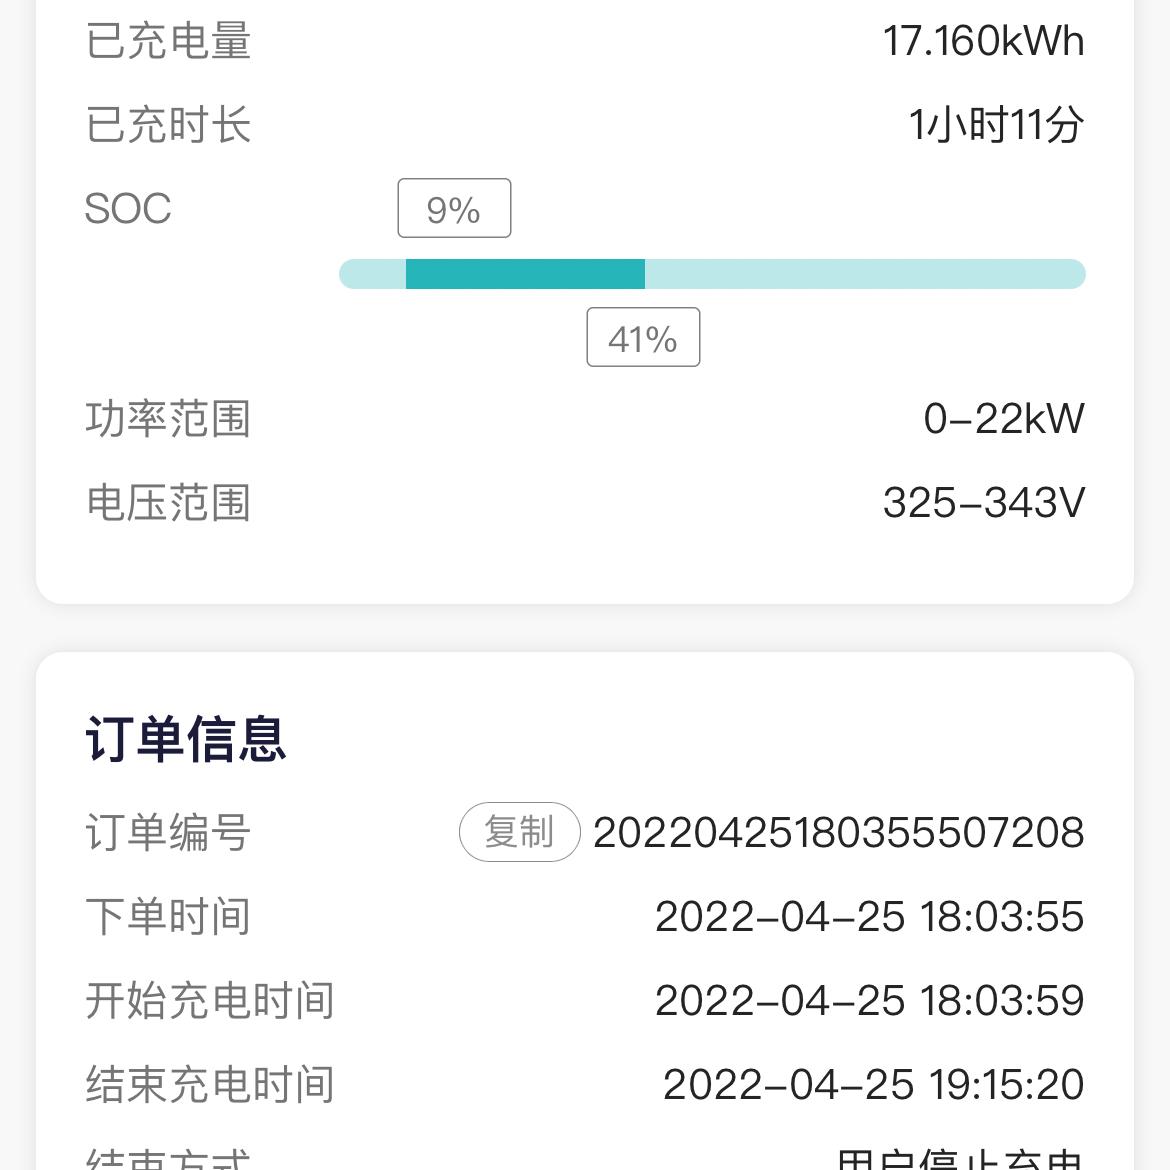 广汽集团广汽丰田iA5 我这个充电时间正常吗？怎么感觉好慢好慢，9%到41%竟然用了一个小时，还是高速上的快充